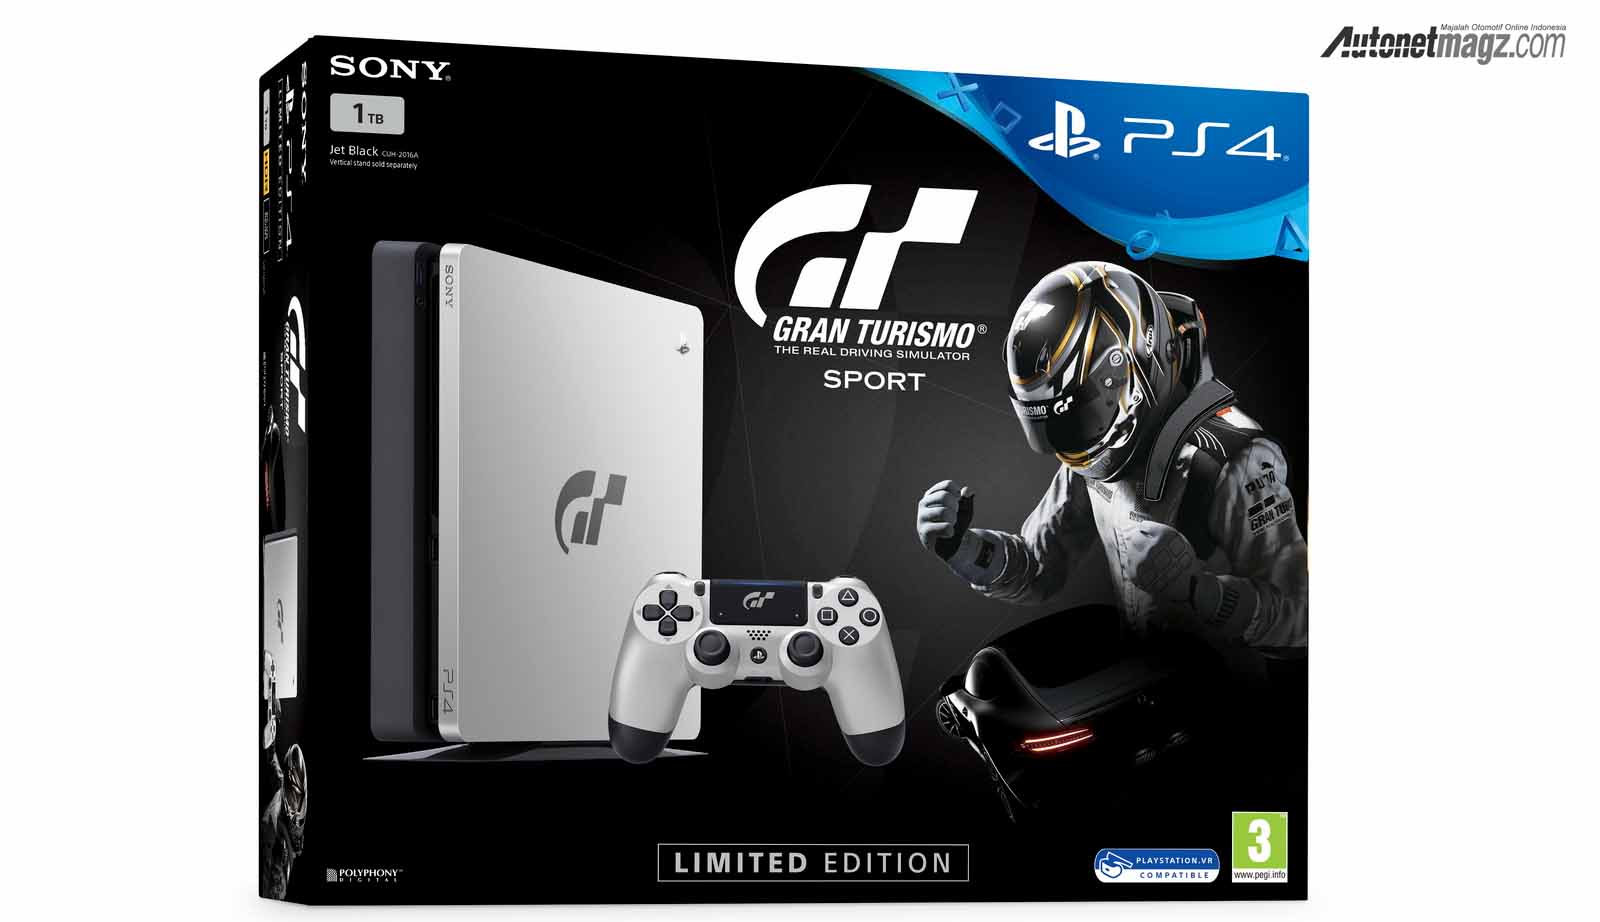 Berita, Sony PlayStation 4 Grand Turismo: Sony Perkenalkan Seri Khusus PlayStation 4 Grand Turismo